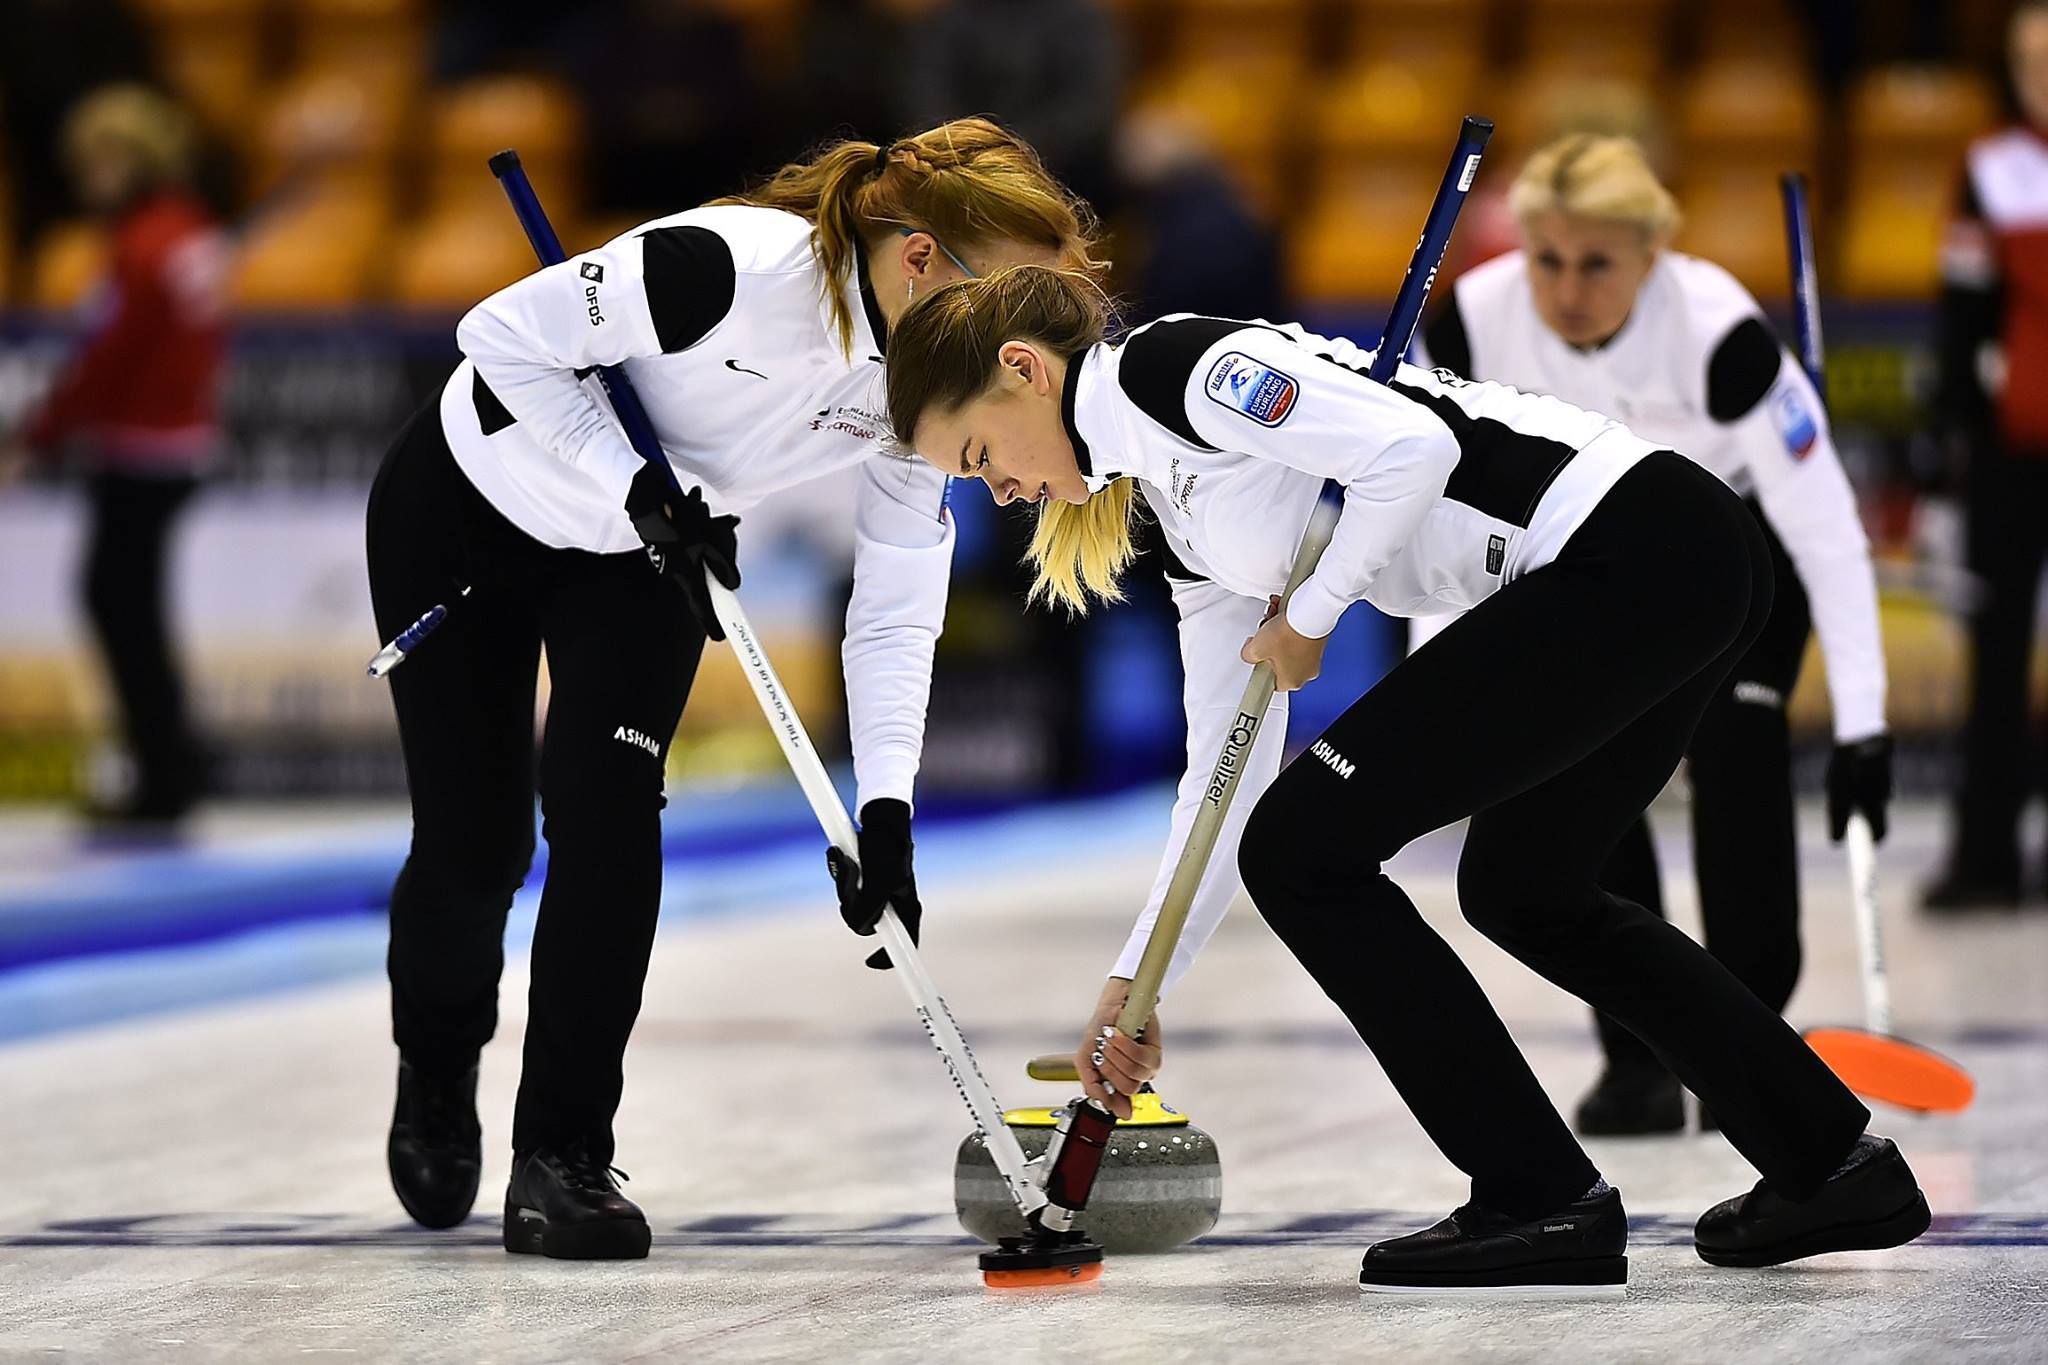 Nädalavahetusel algavad Eesti meistrivõistlused curlingus